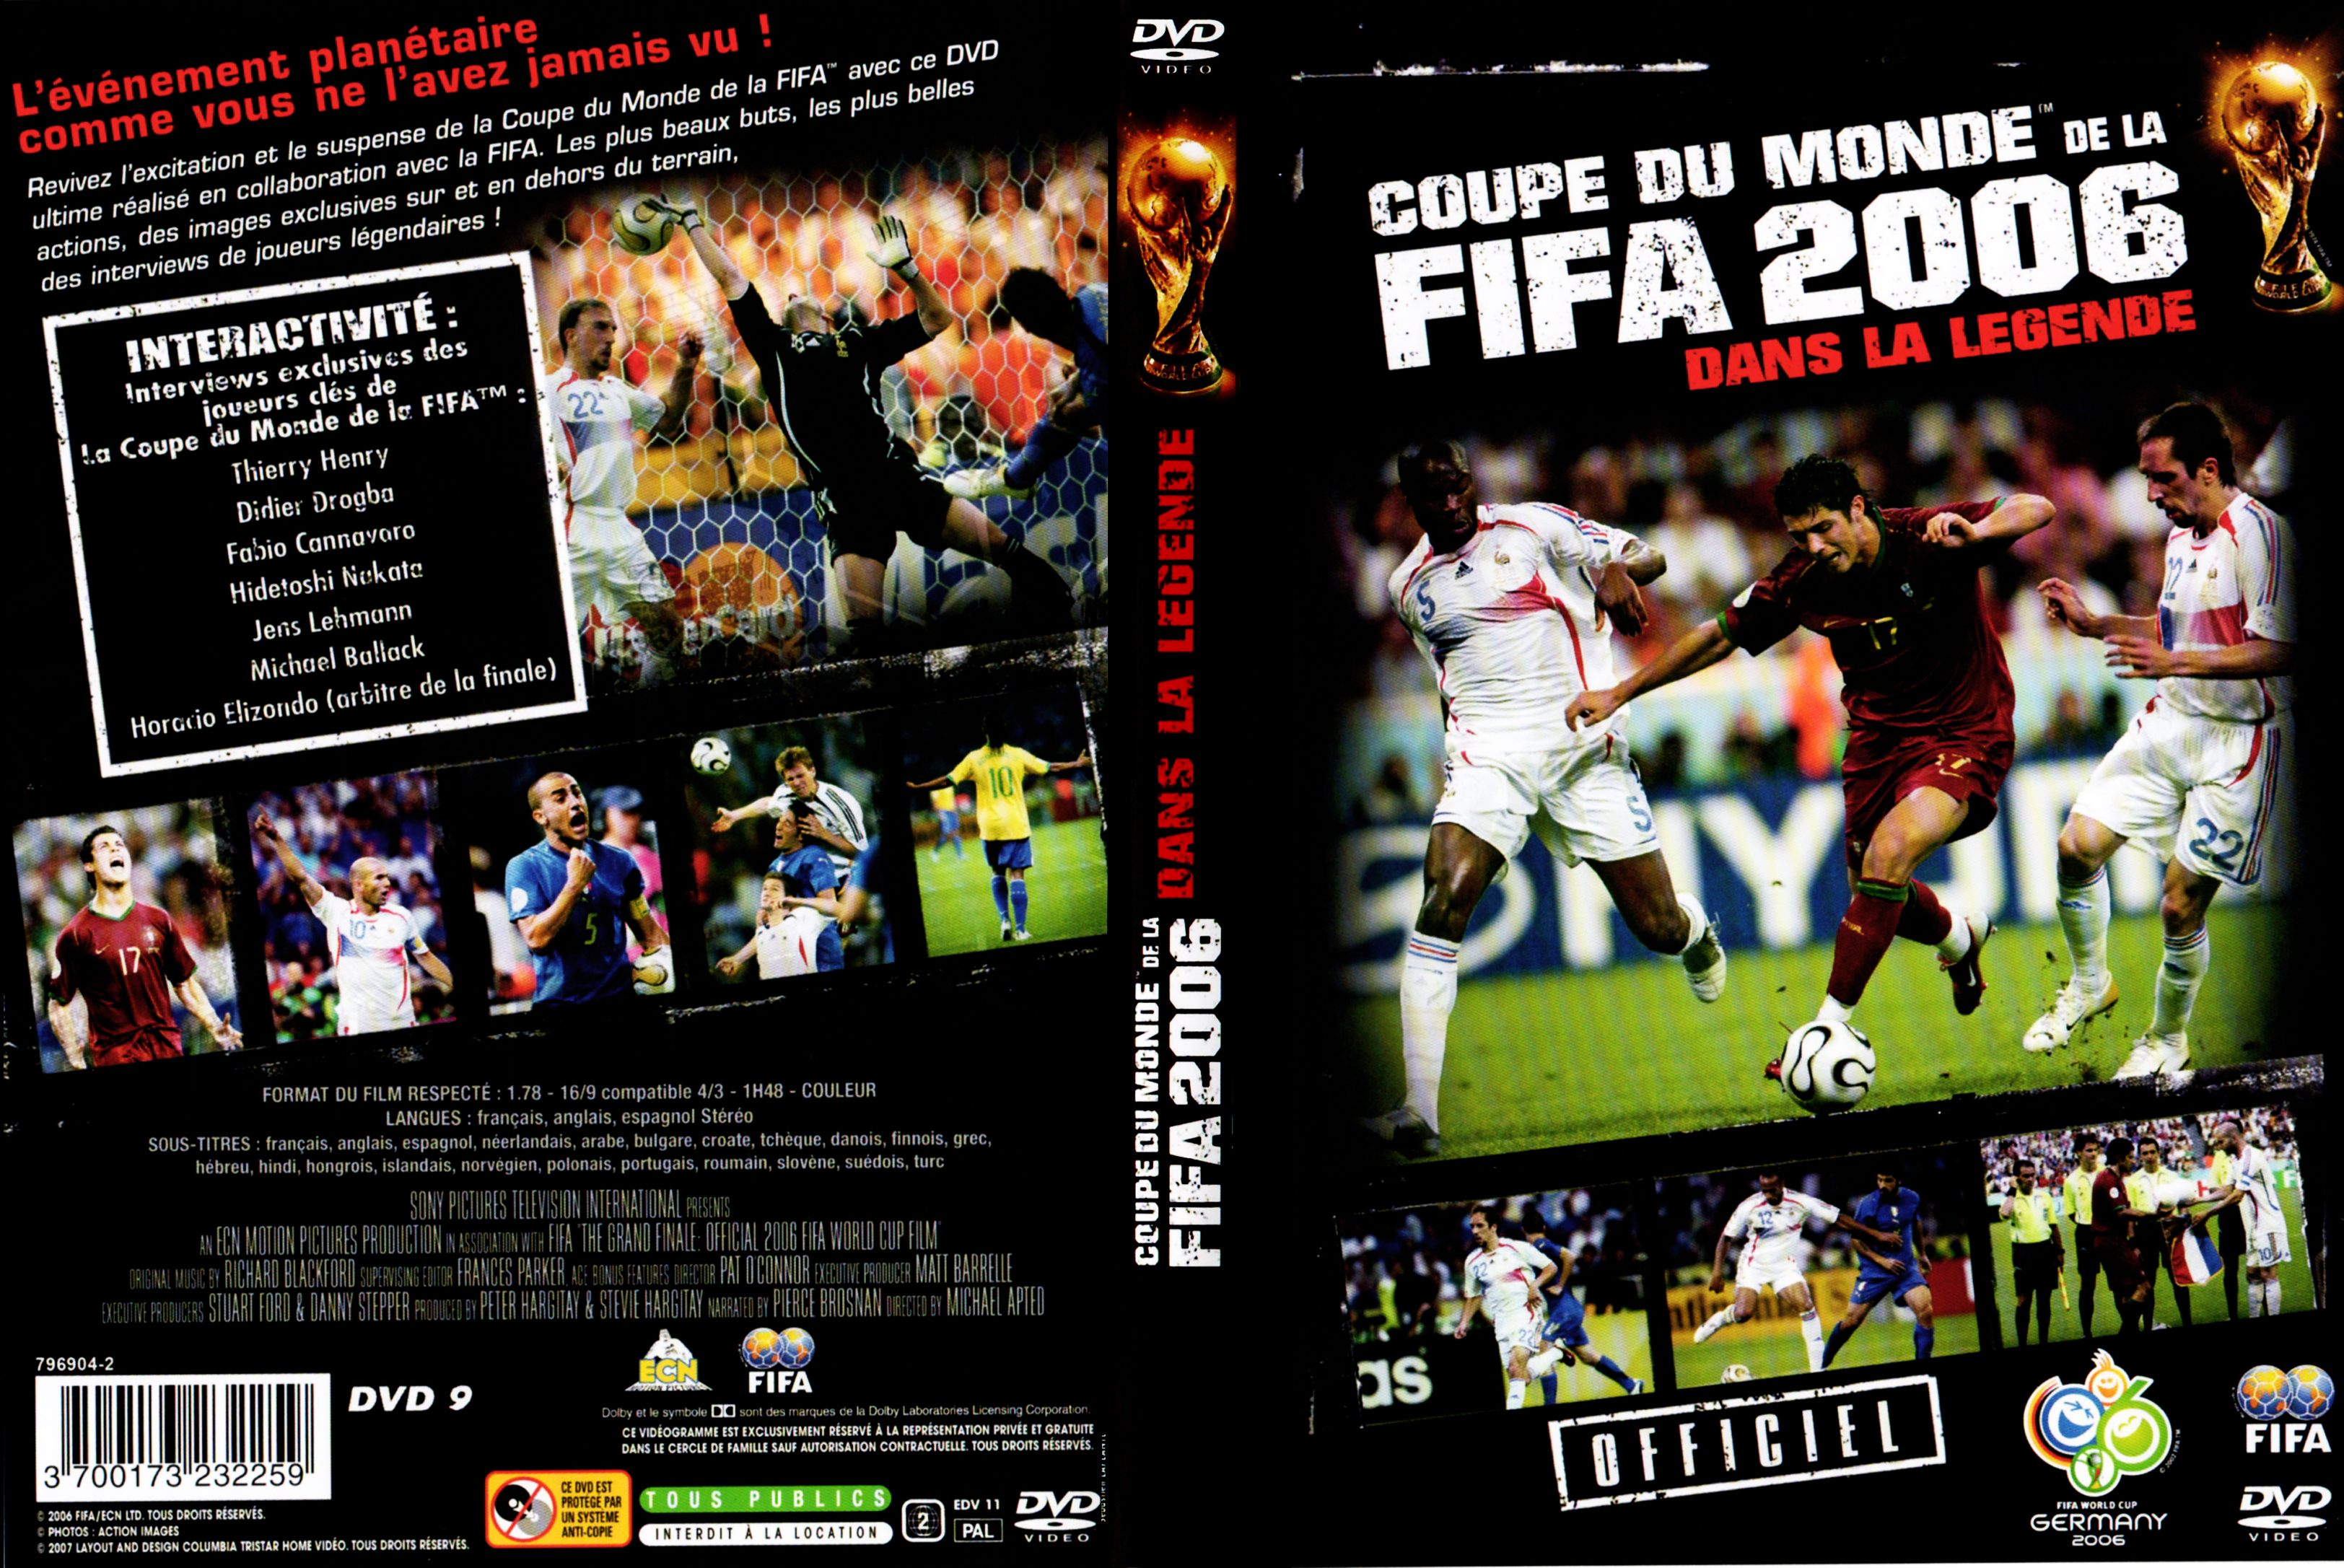 Jaquette DVD Coupe du monde de FIFA 2006 dans la lgende